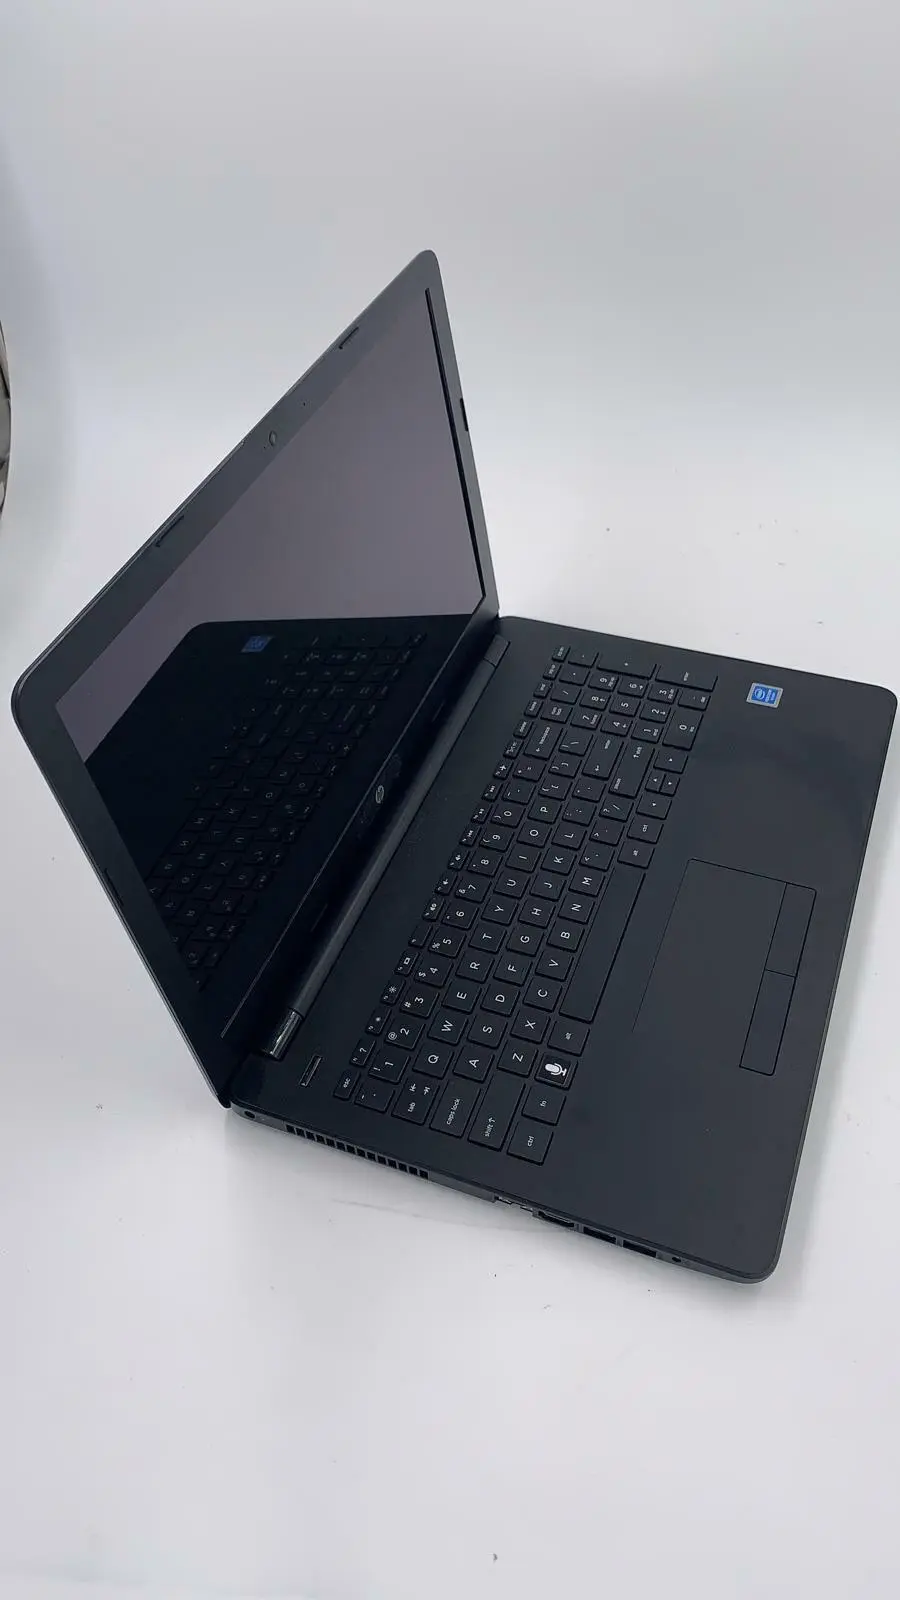 hewlett packard 15-bs2xx - Can I upgrade the HP Laptop 15 bs2xx